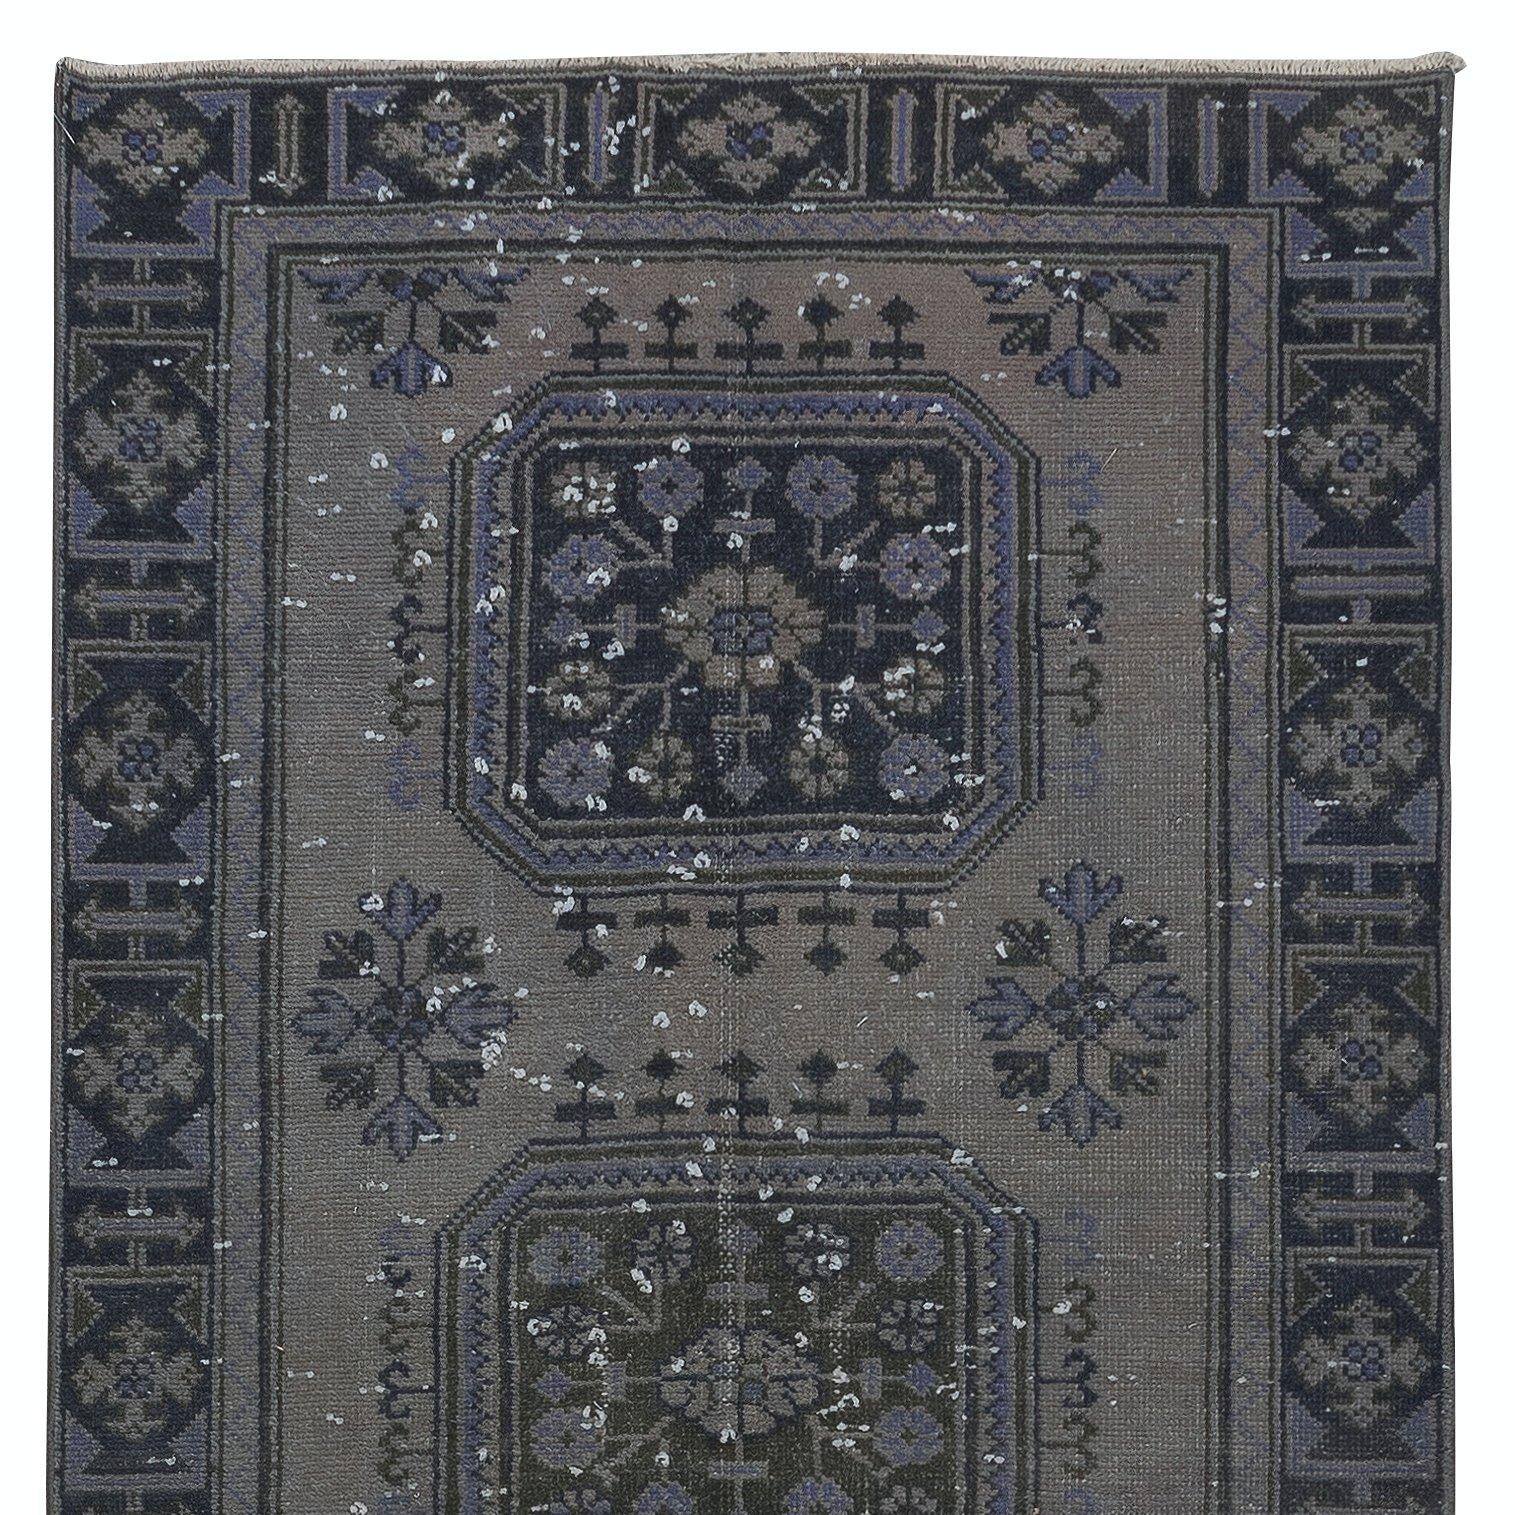 Modern 4.2x11.6 Ft Turkish Runner Rug, Handmade Corridor Carpet in Gray, Black & Purple For Sale